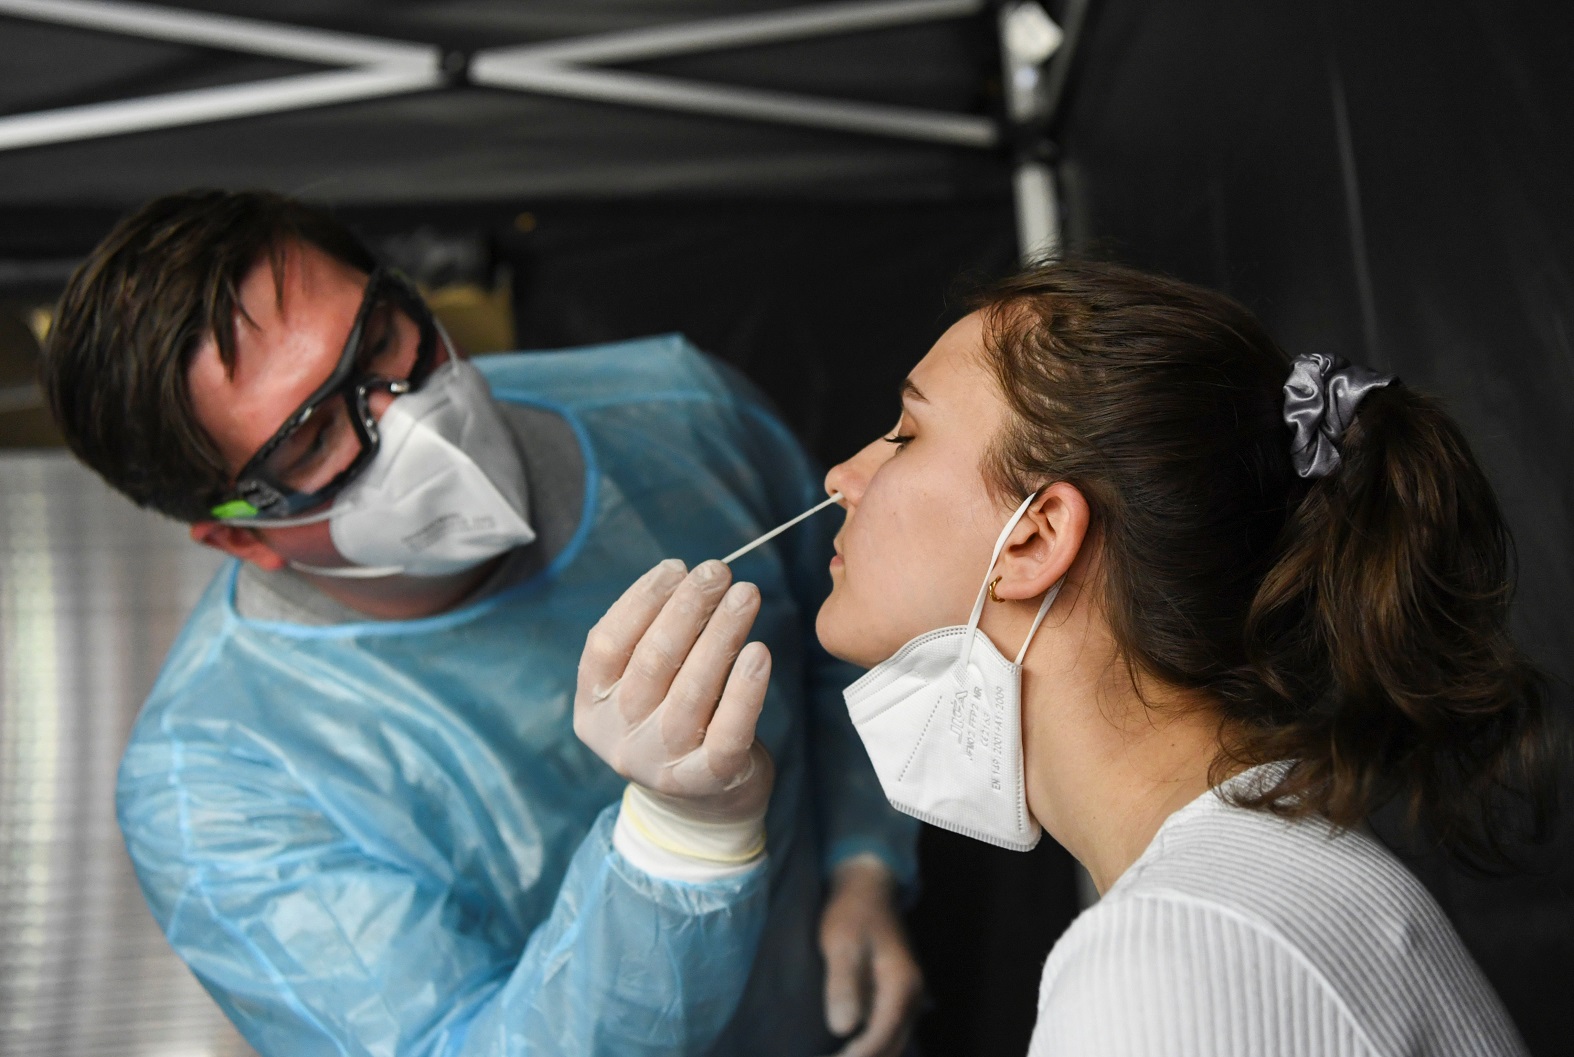 عامل رعاية صحية يأخذ مسحة من شخص أثناء اختبار فيروس كورونا (COVID-19)، في برلين، ألمانيا، 11 أيار/مايو 2021. (رويترز)